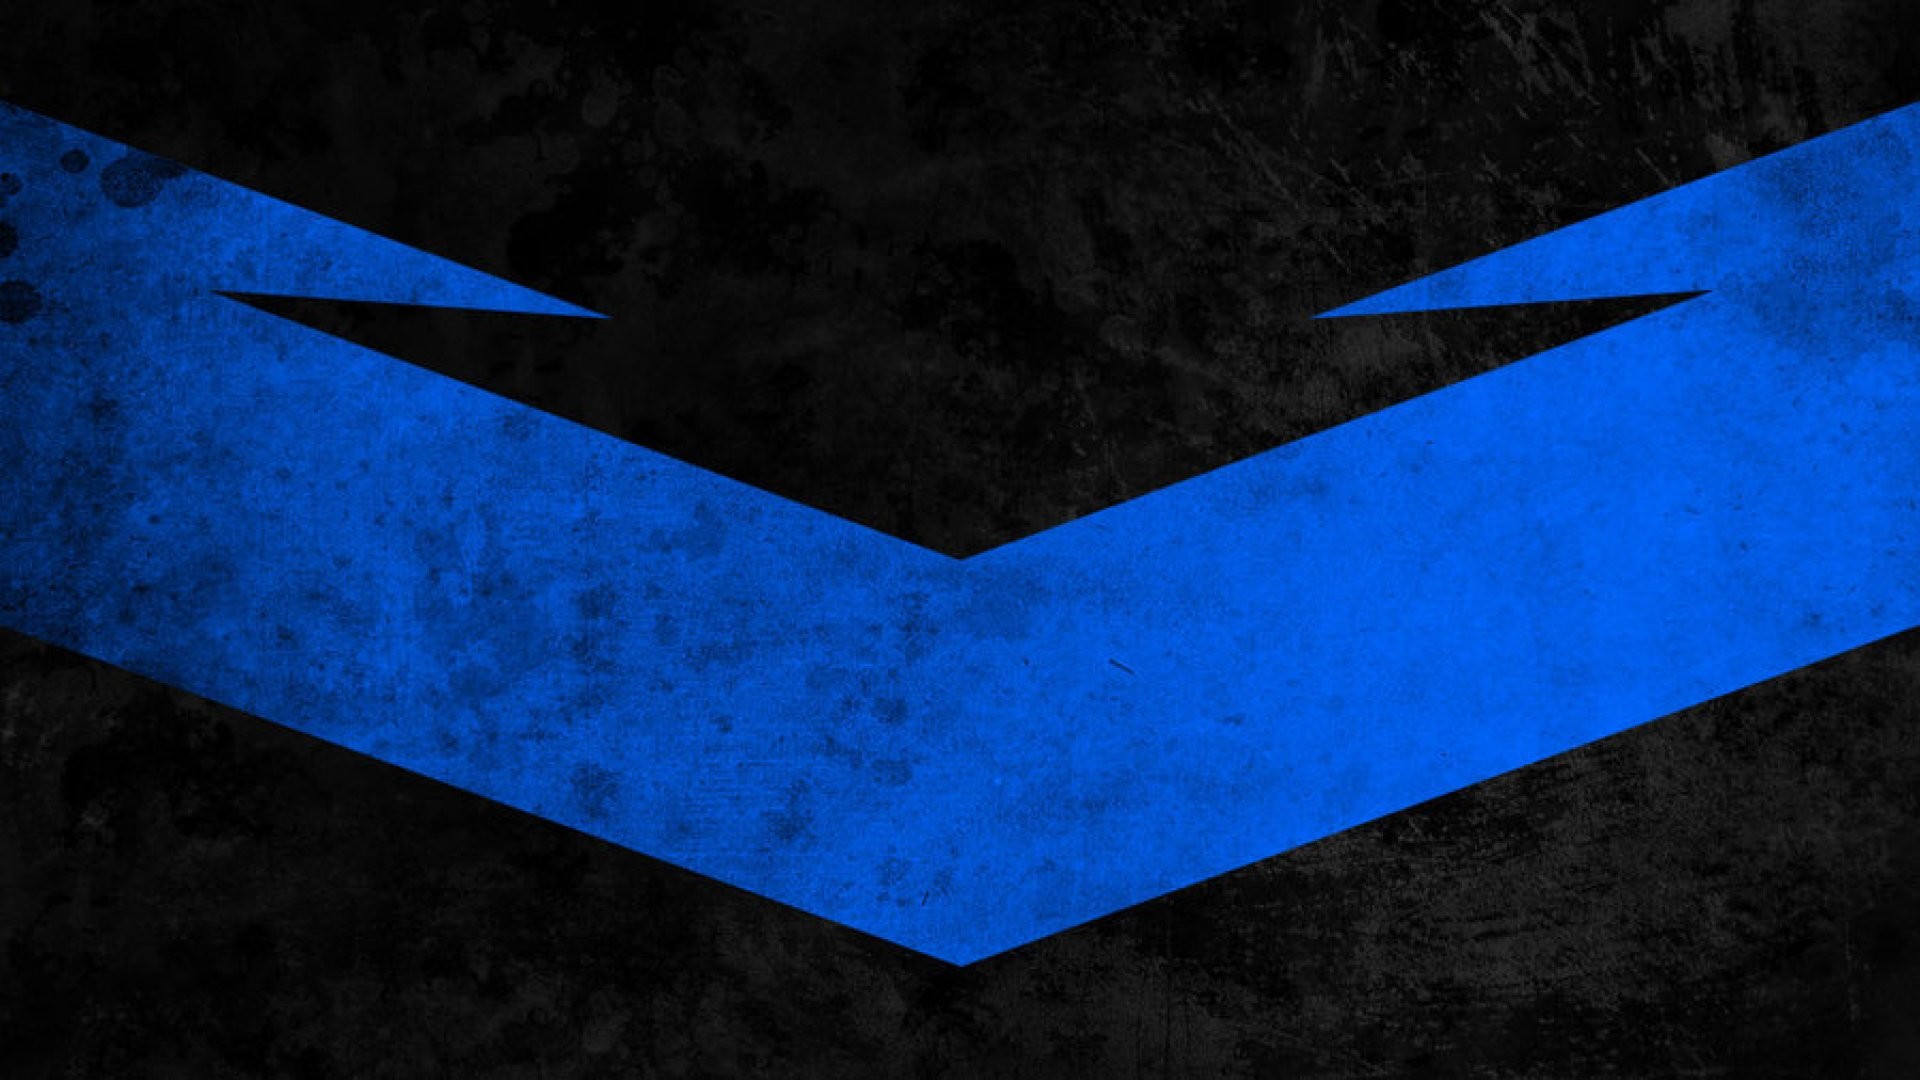 Nightwing Logo Wallpapers